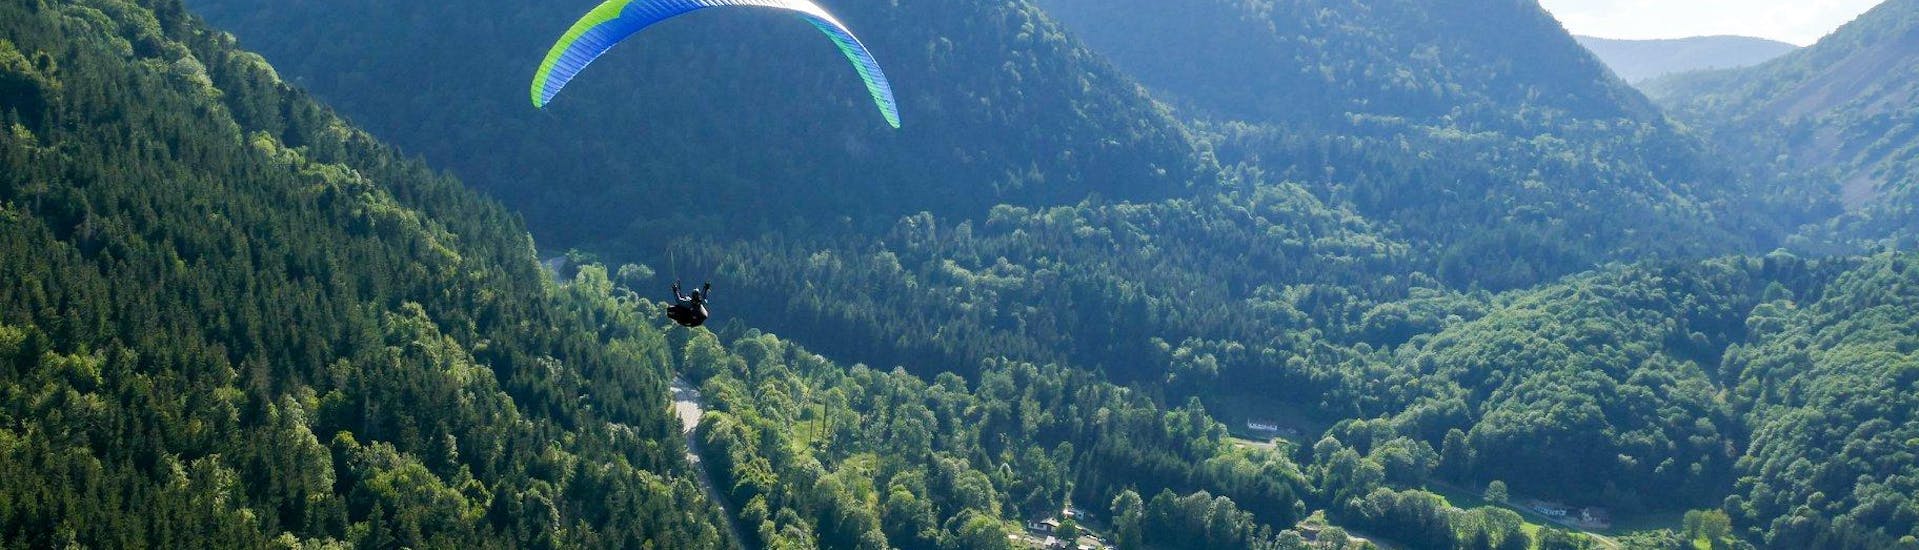 Ein Tandem Paraglider gleitet über die Berge während des Tandem Paragliding von der Jöchelspitze - Thermikflug mit onair Paragliding Center Tirol.